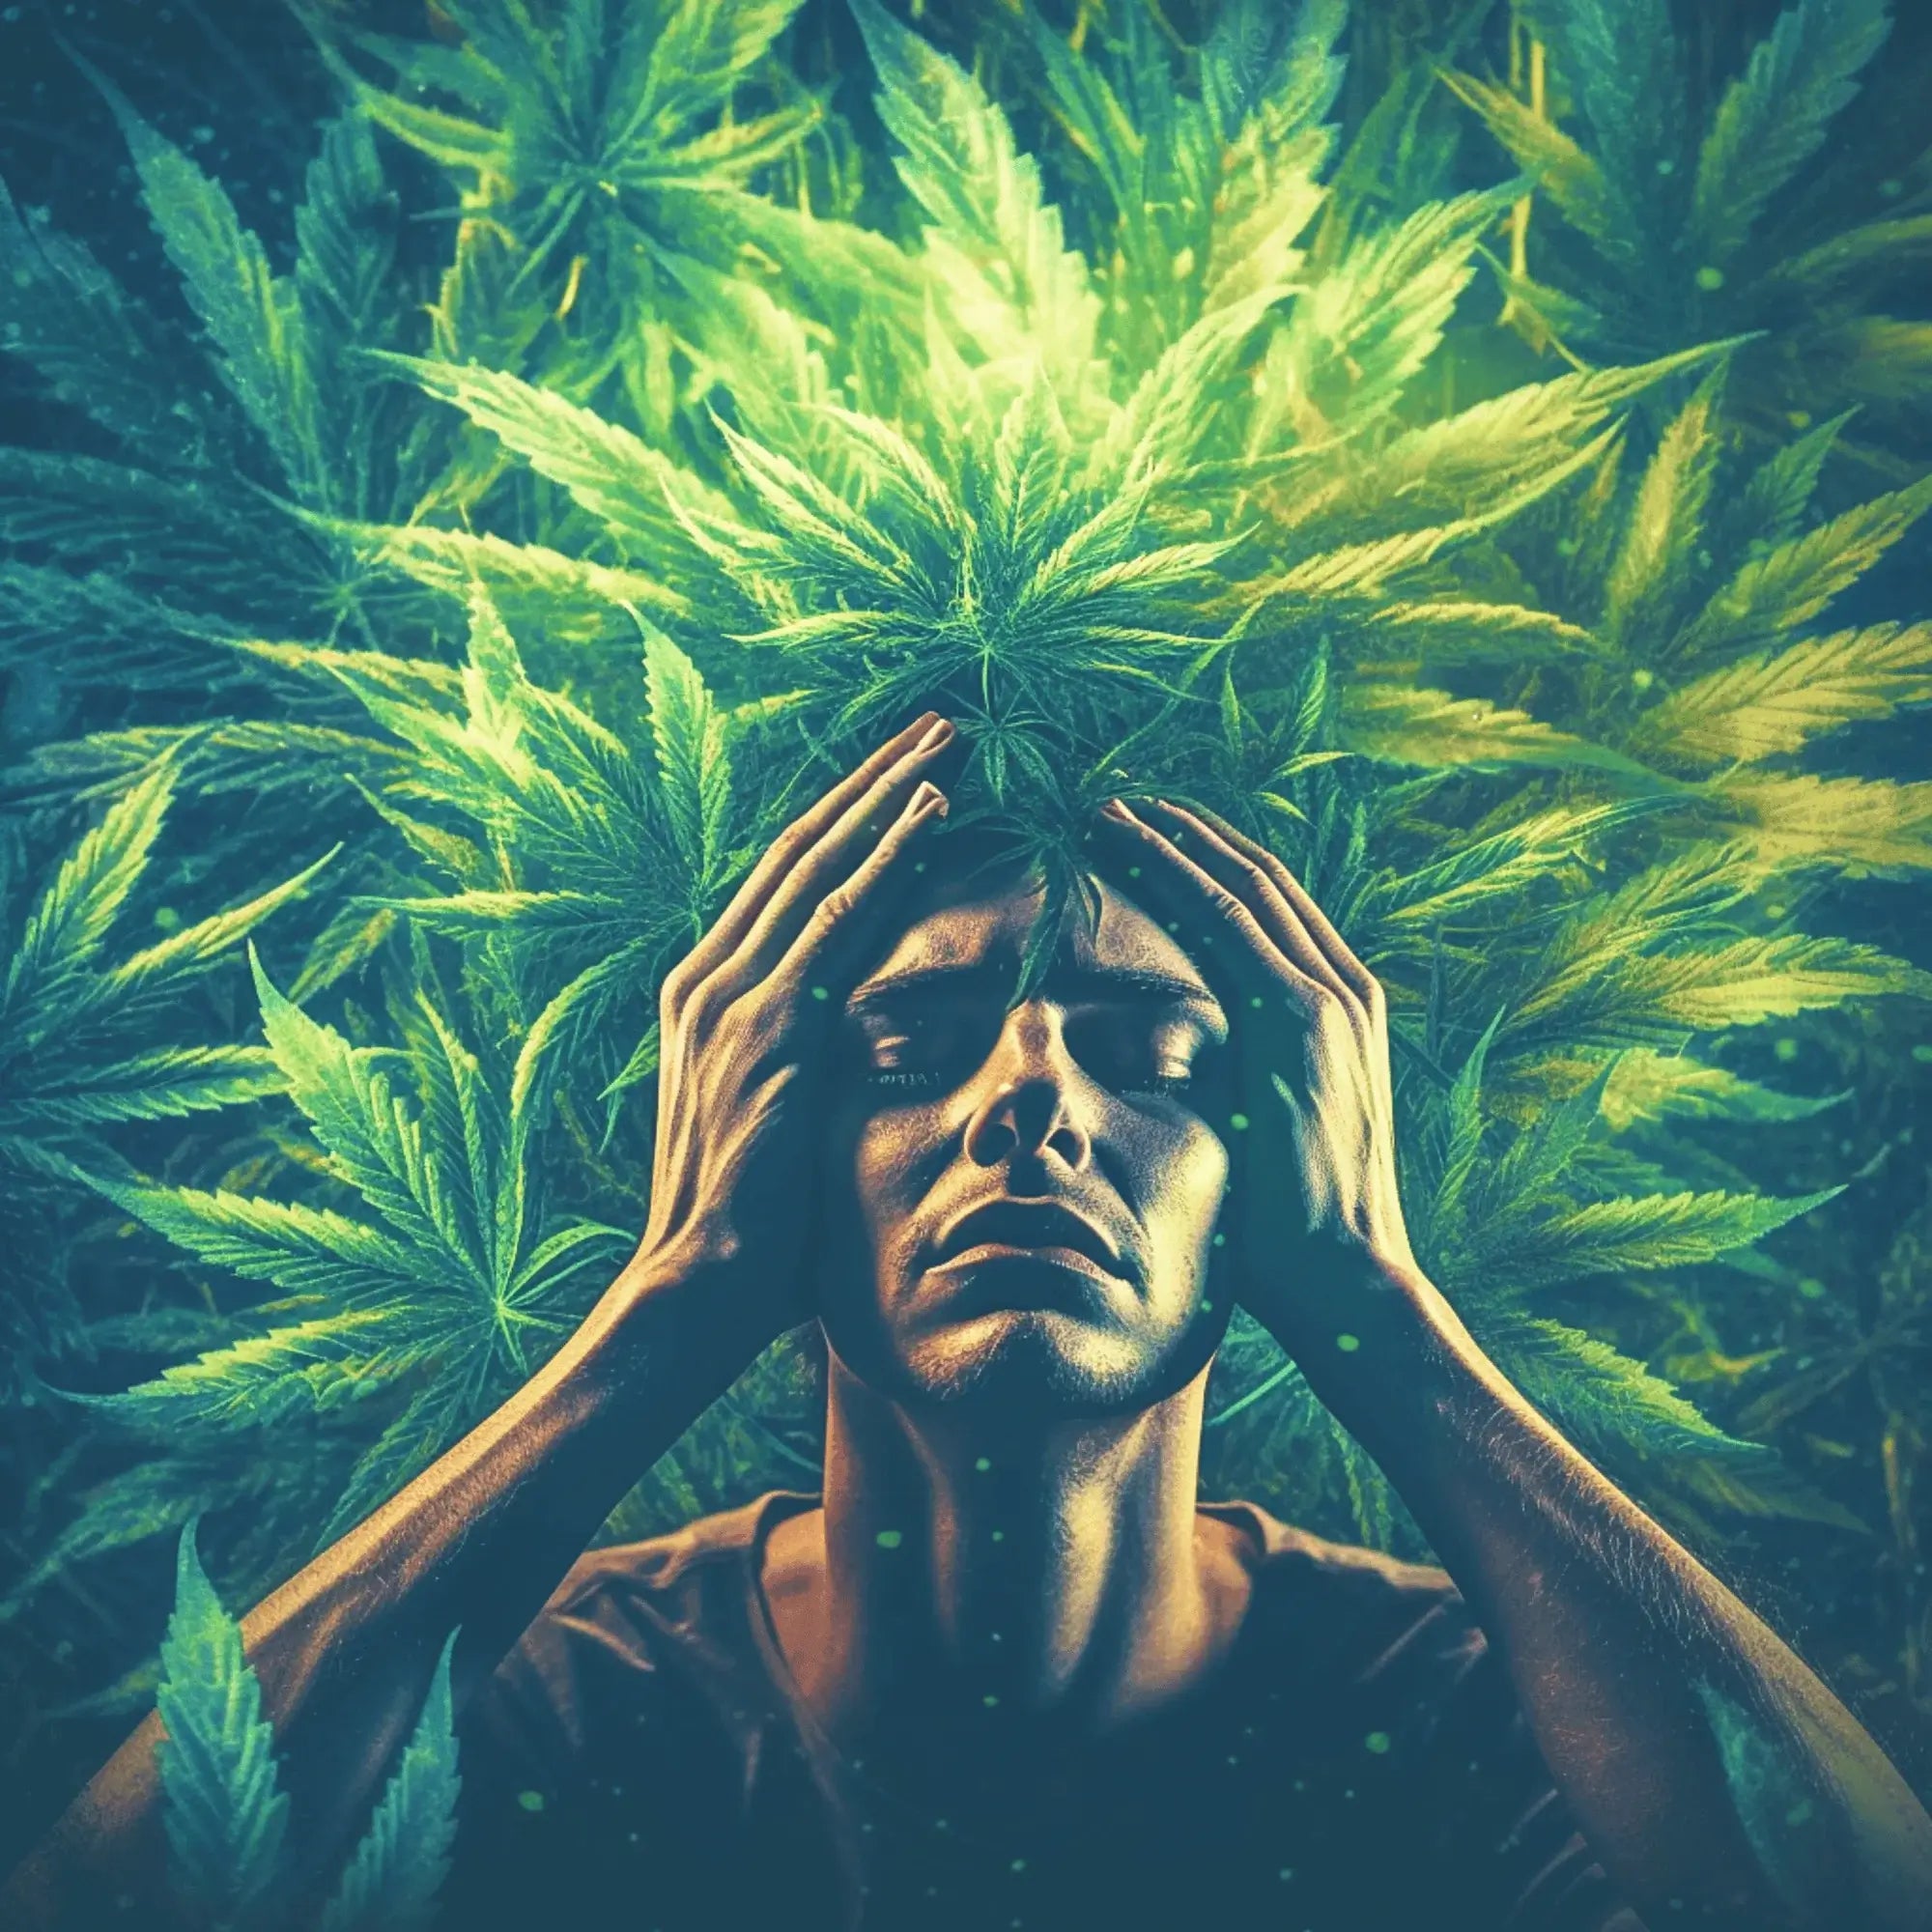 Hemp Seed Oil For Anxiety | The Cannabis Co. - The Cannabis Company